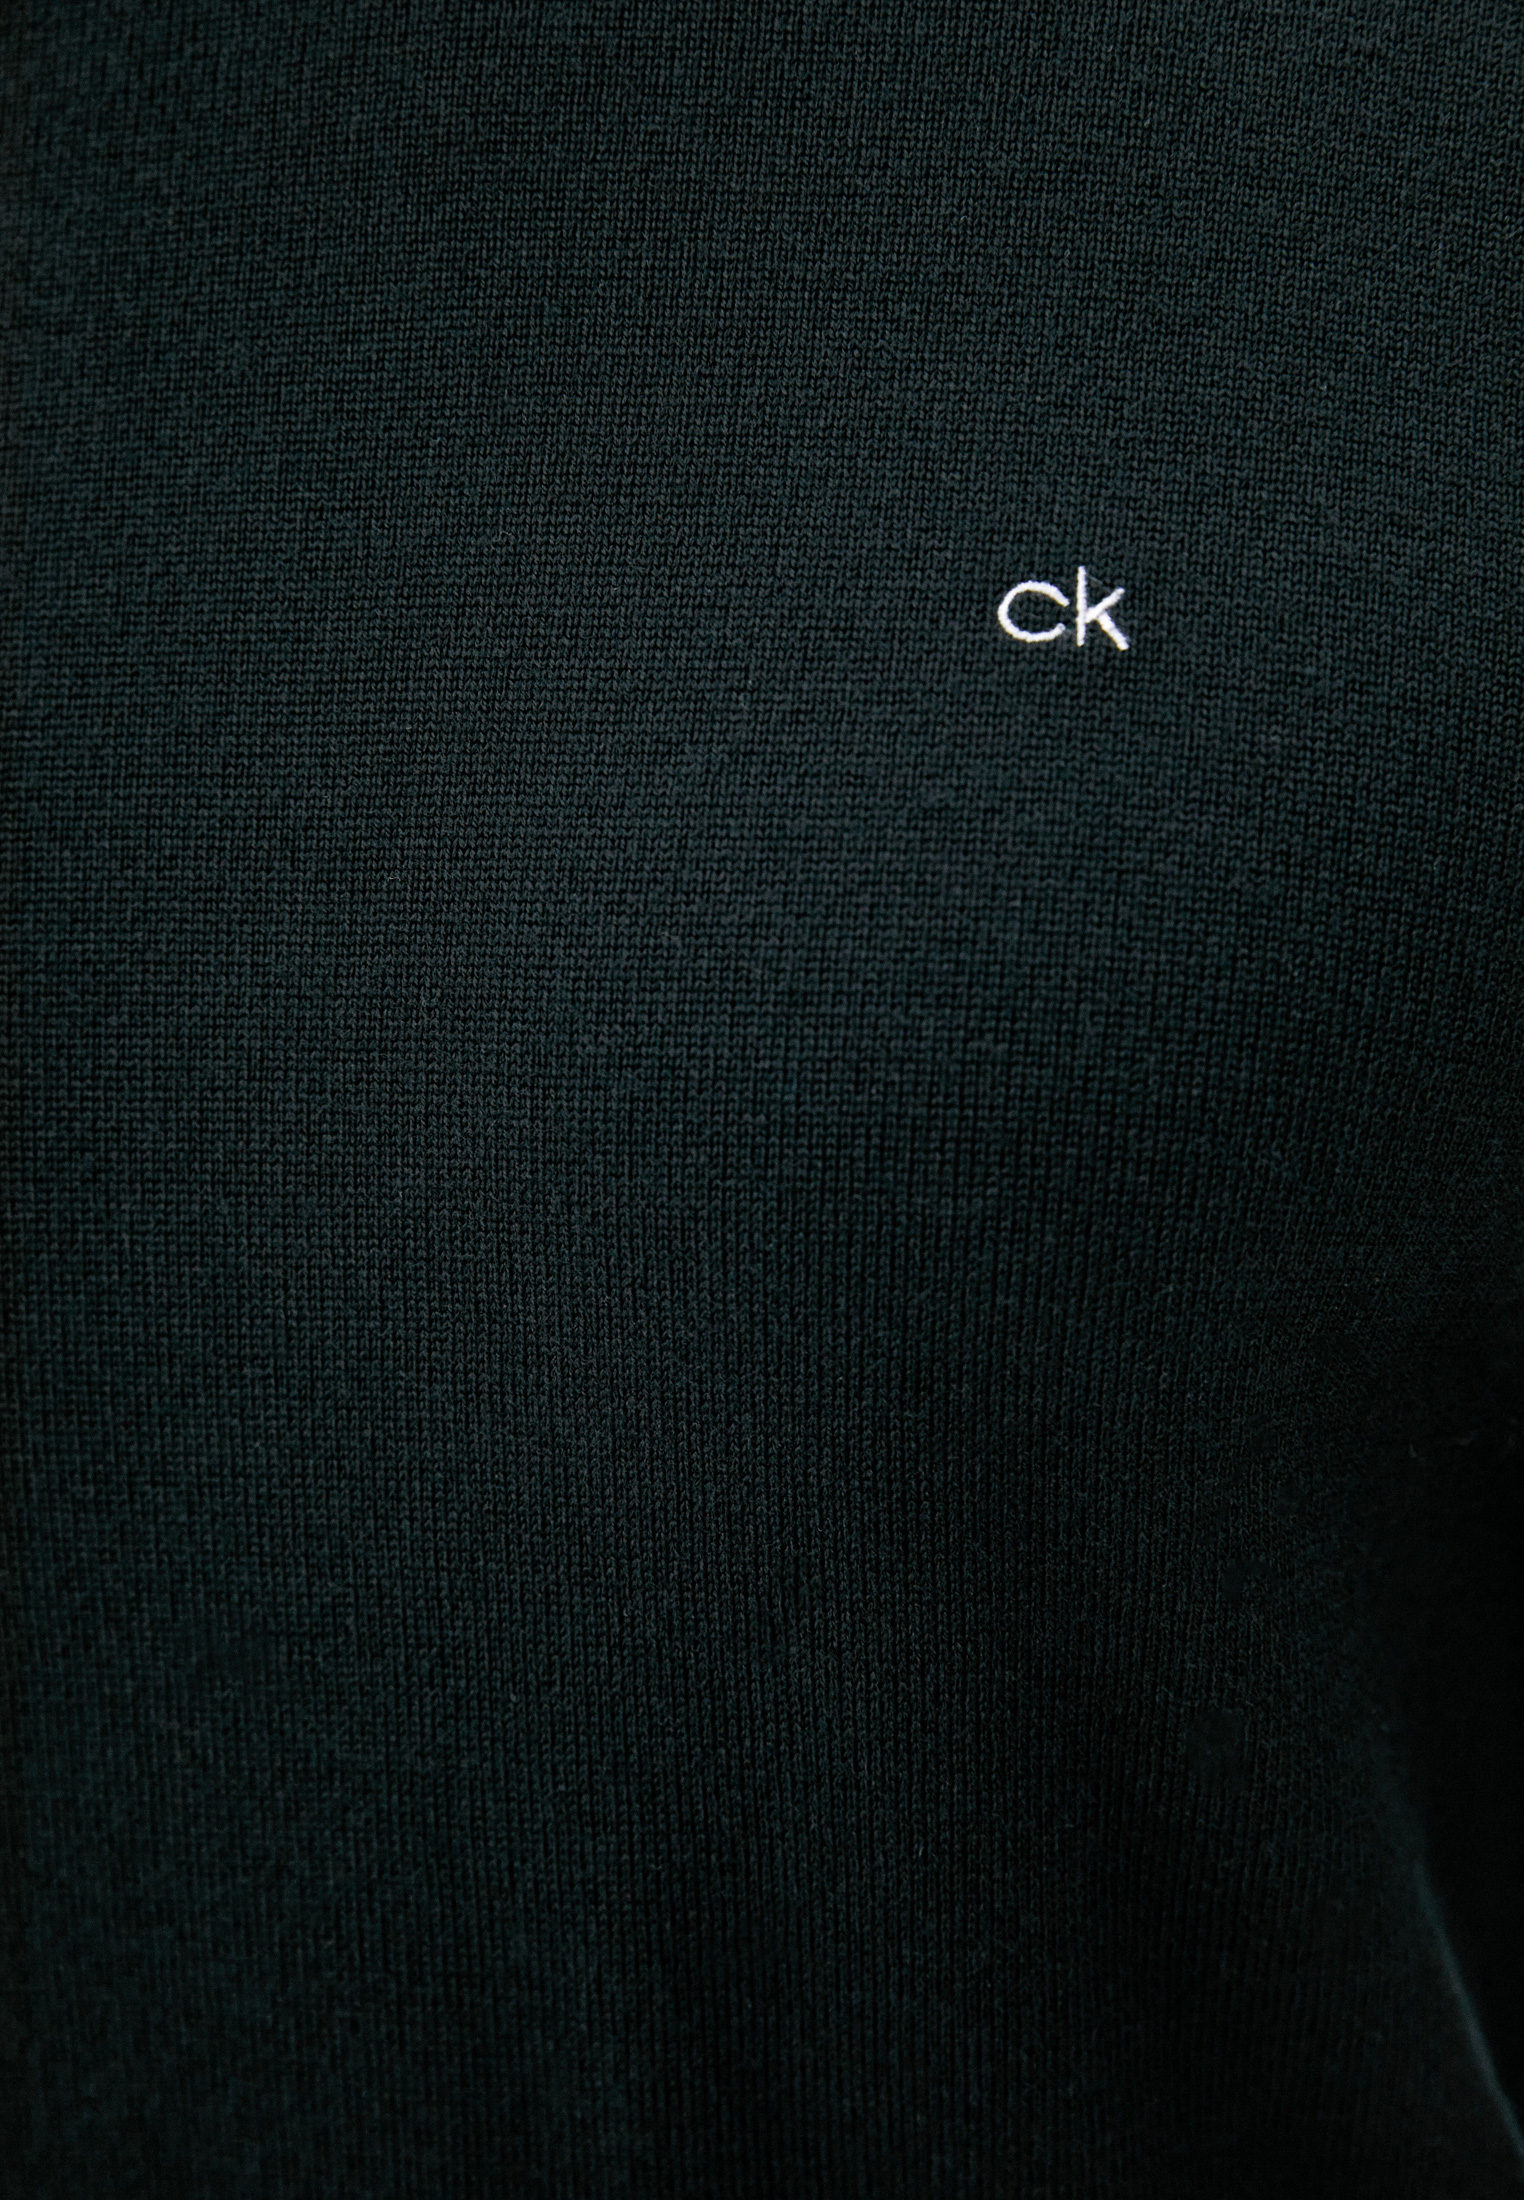 Джемпер Calvin Klein (Кельвин Кляйн) K10K102727: изображение 5